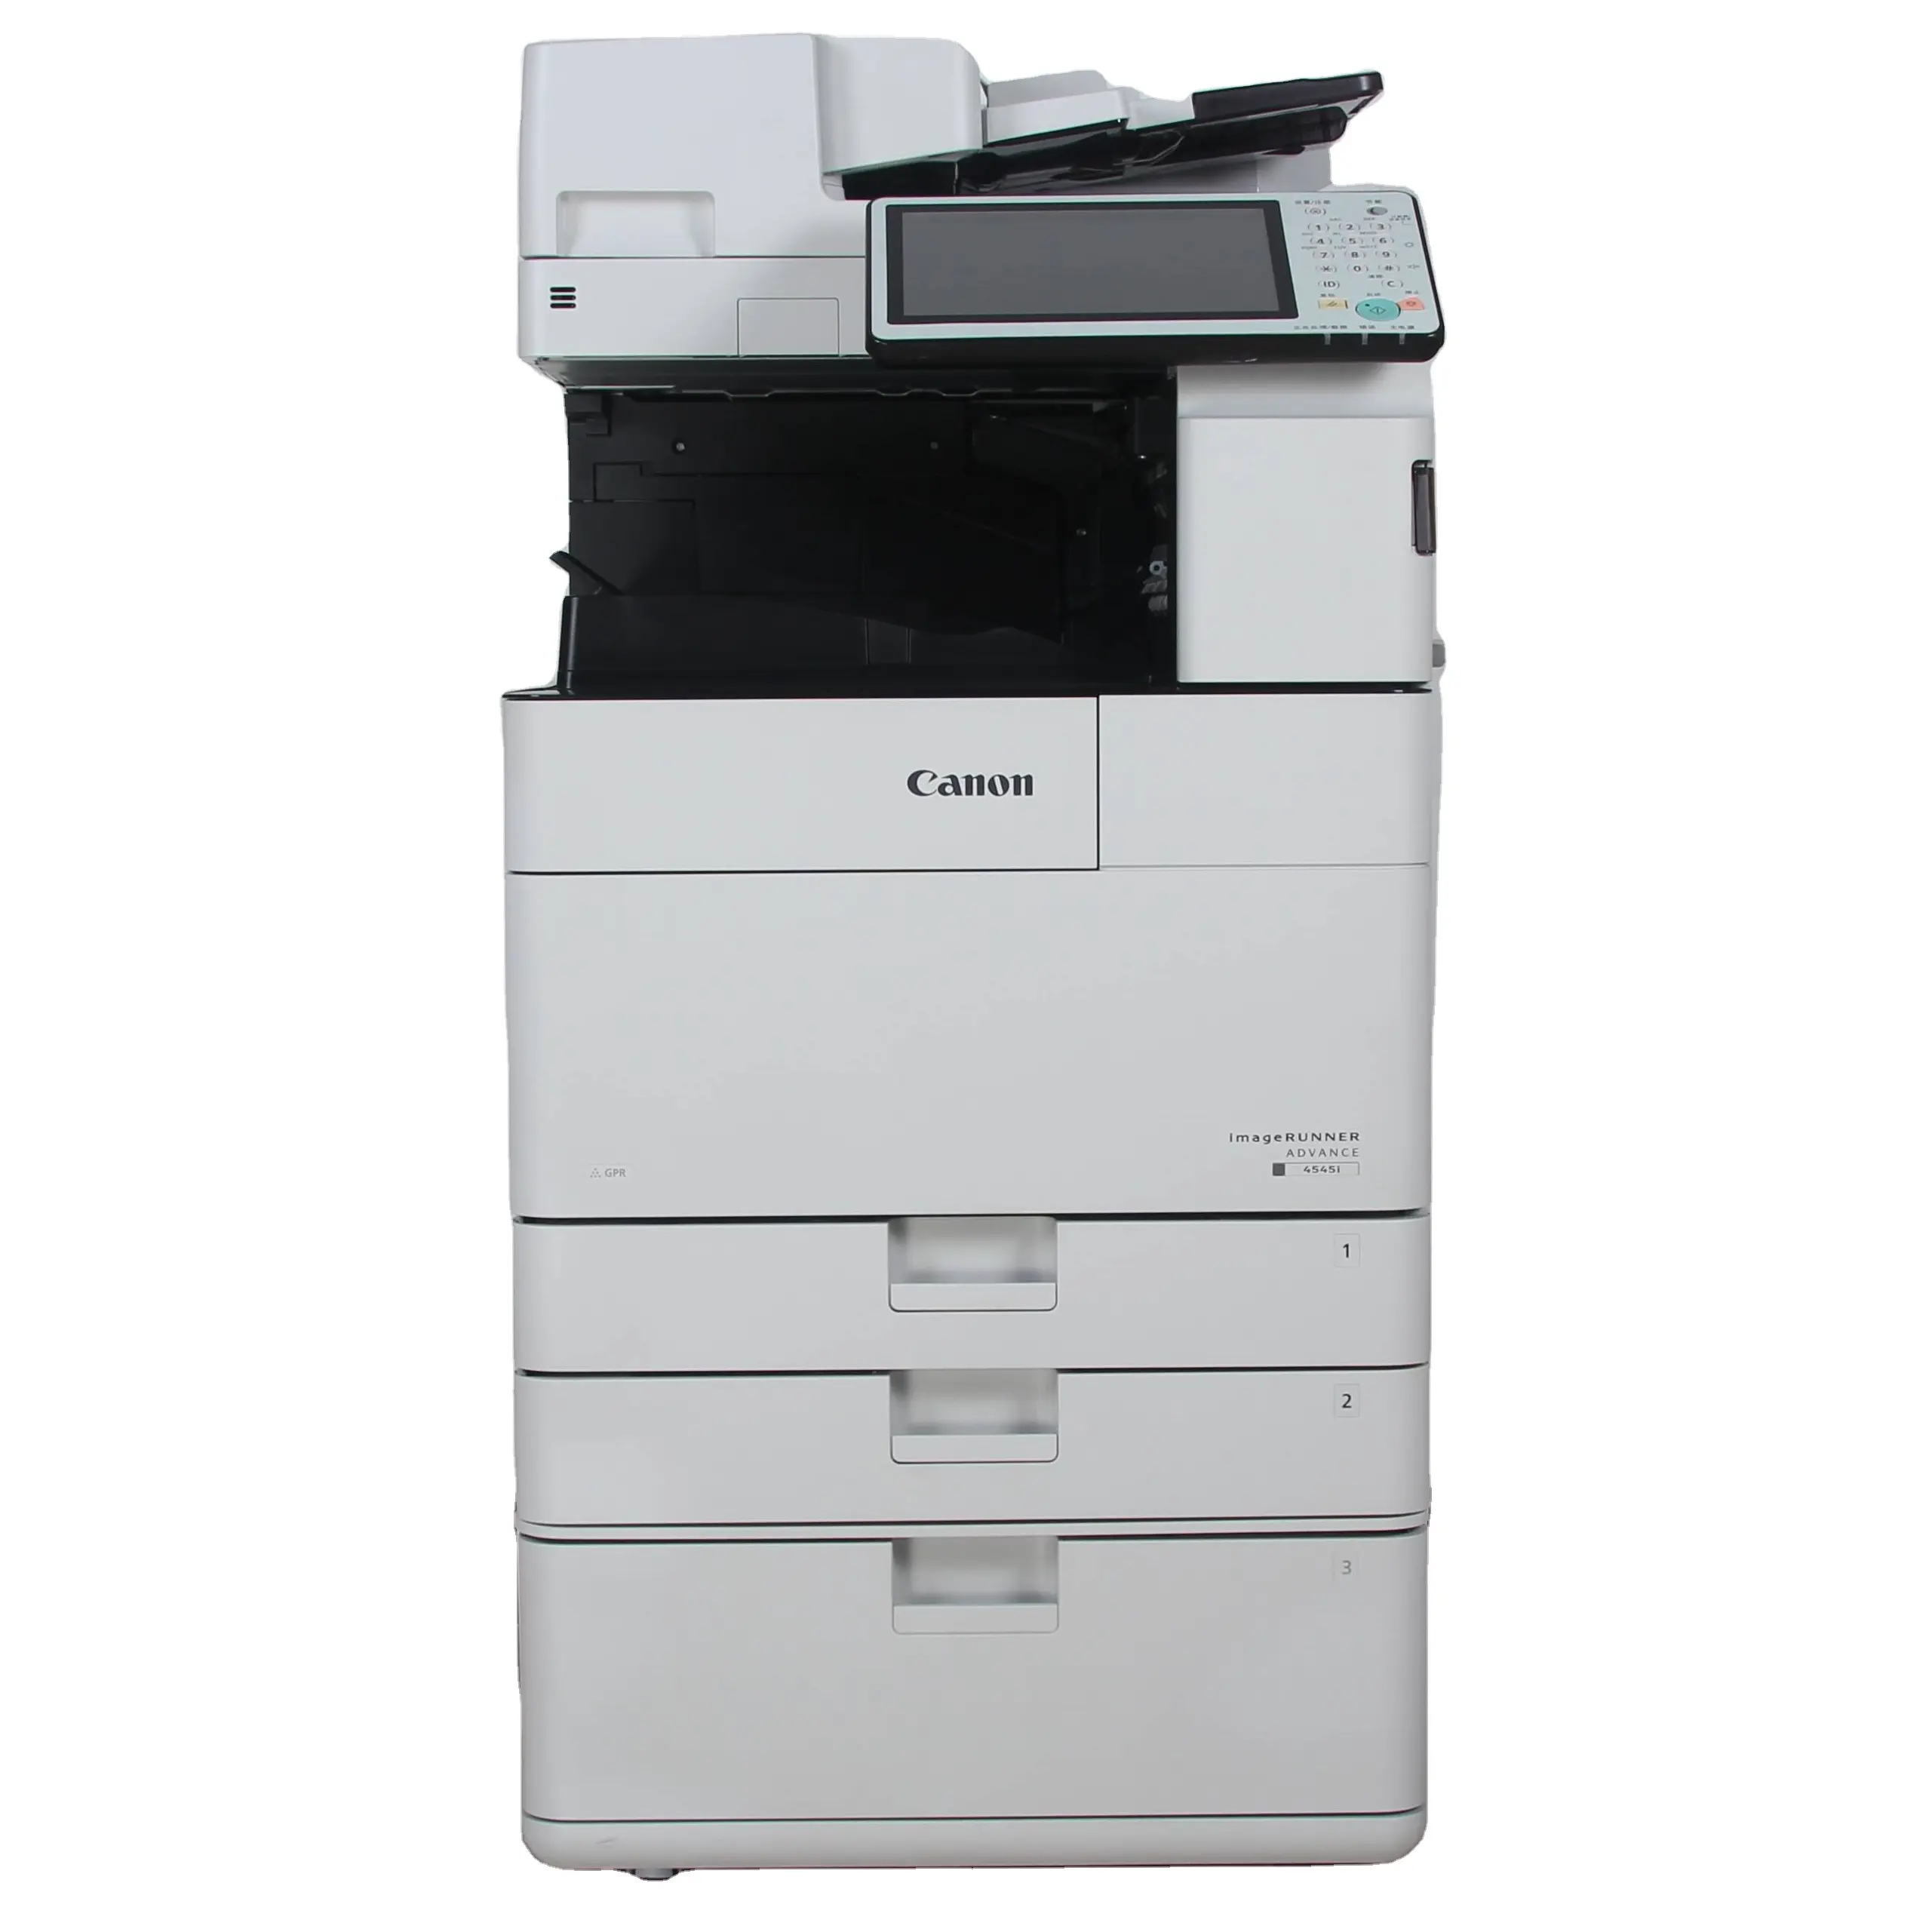 Used Digital Photocopy Machine Refurbished printers copiers IR-4525 Used Copier Photocopy Machine for canon